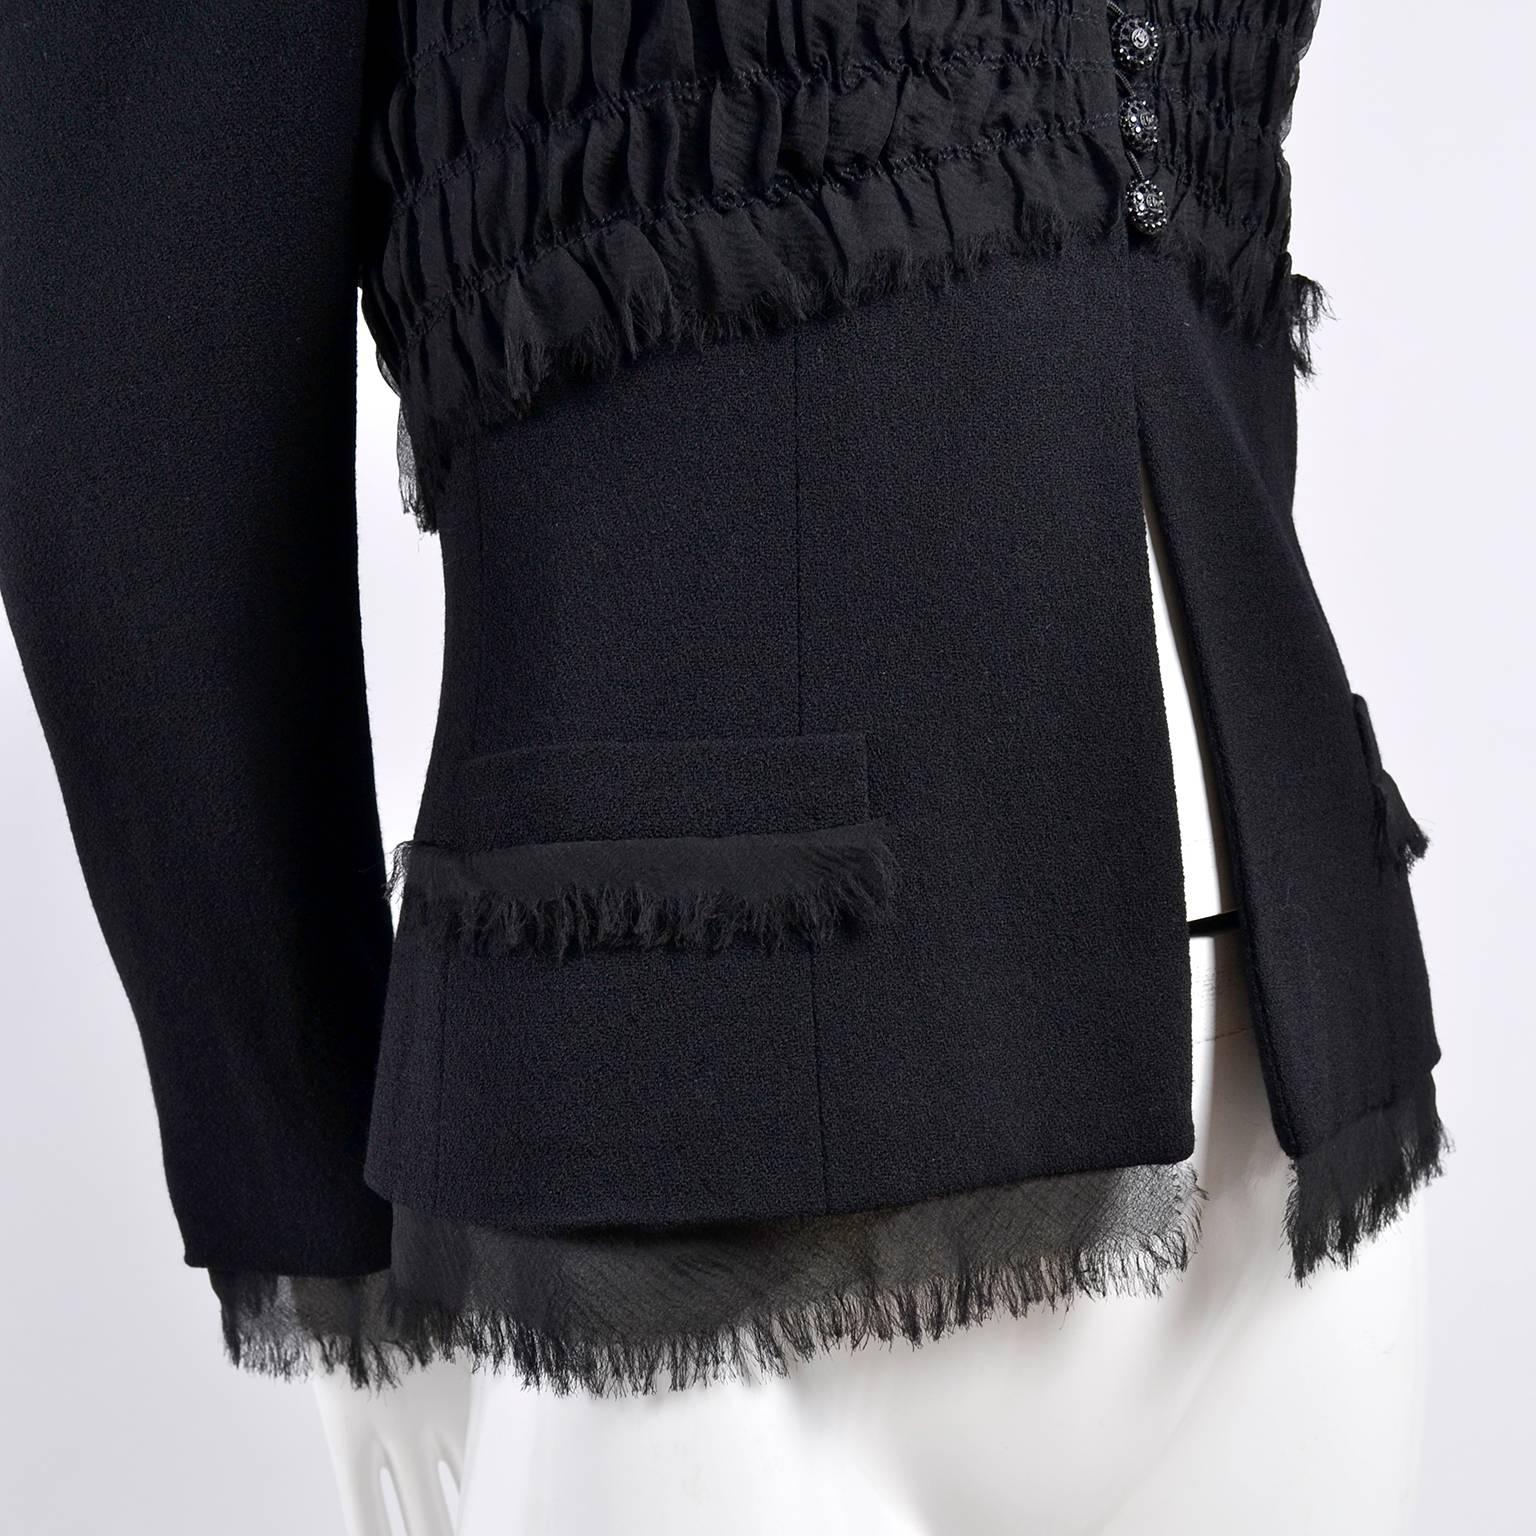 2004 Black Silk & Wool Chanel Jacket Ruching W Frayed Edges New w/ Tag 04 Sz 38 6